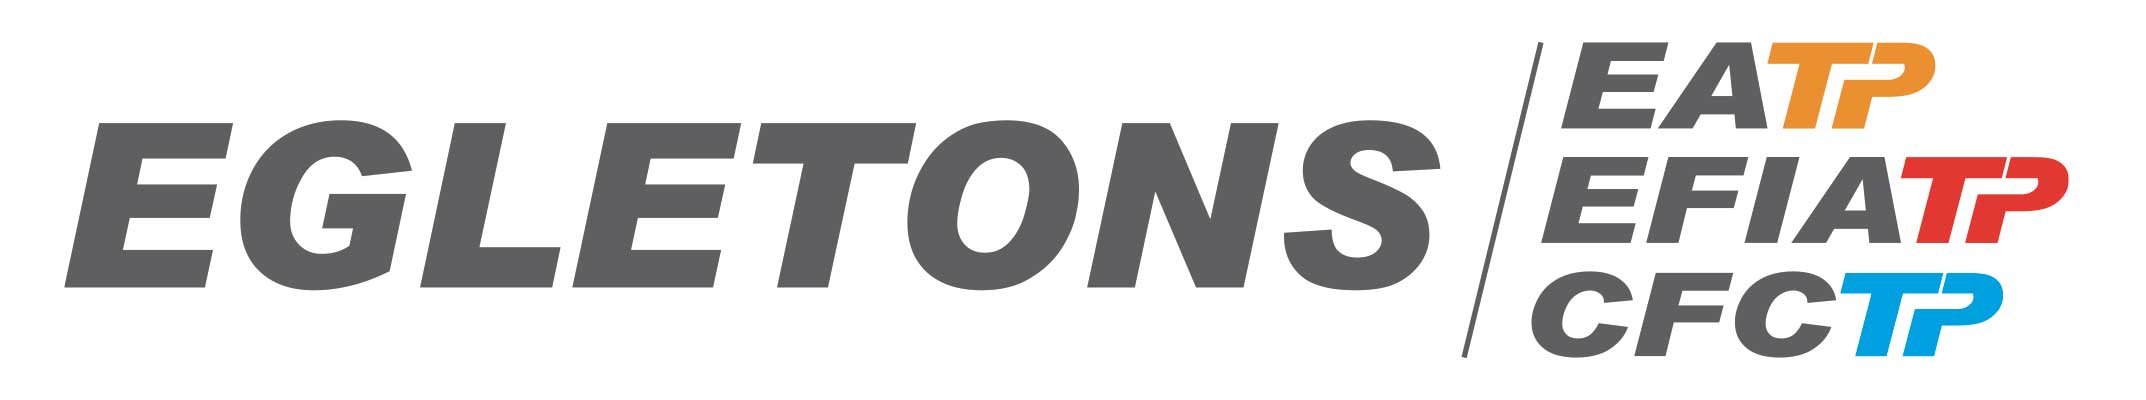 Logo-EGLETONS.jpg